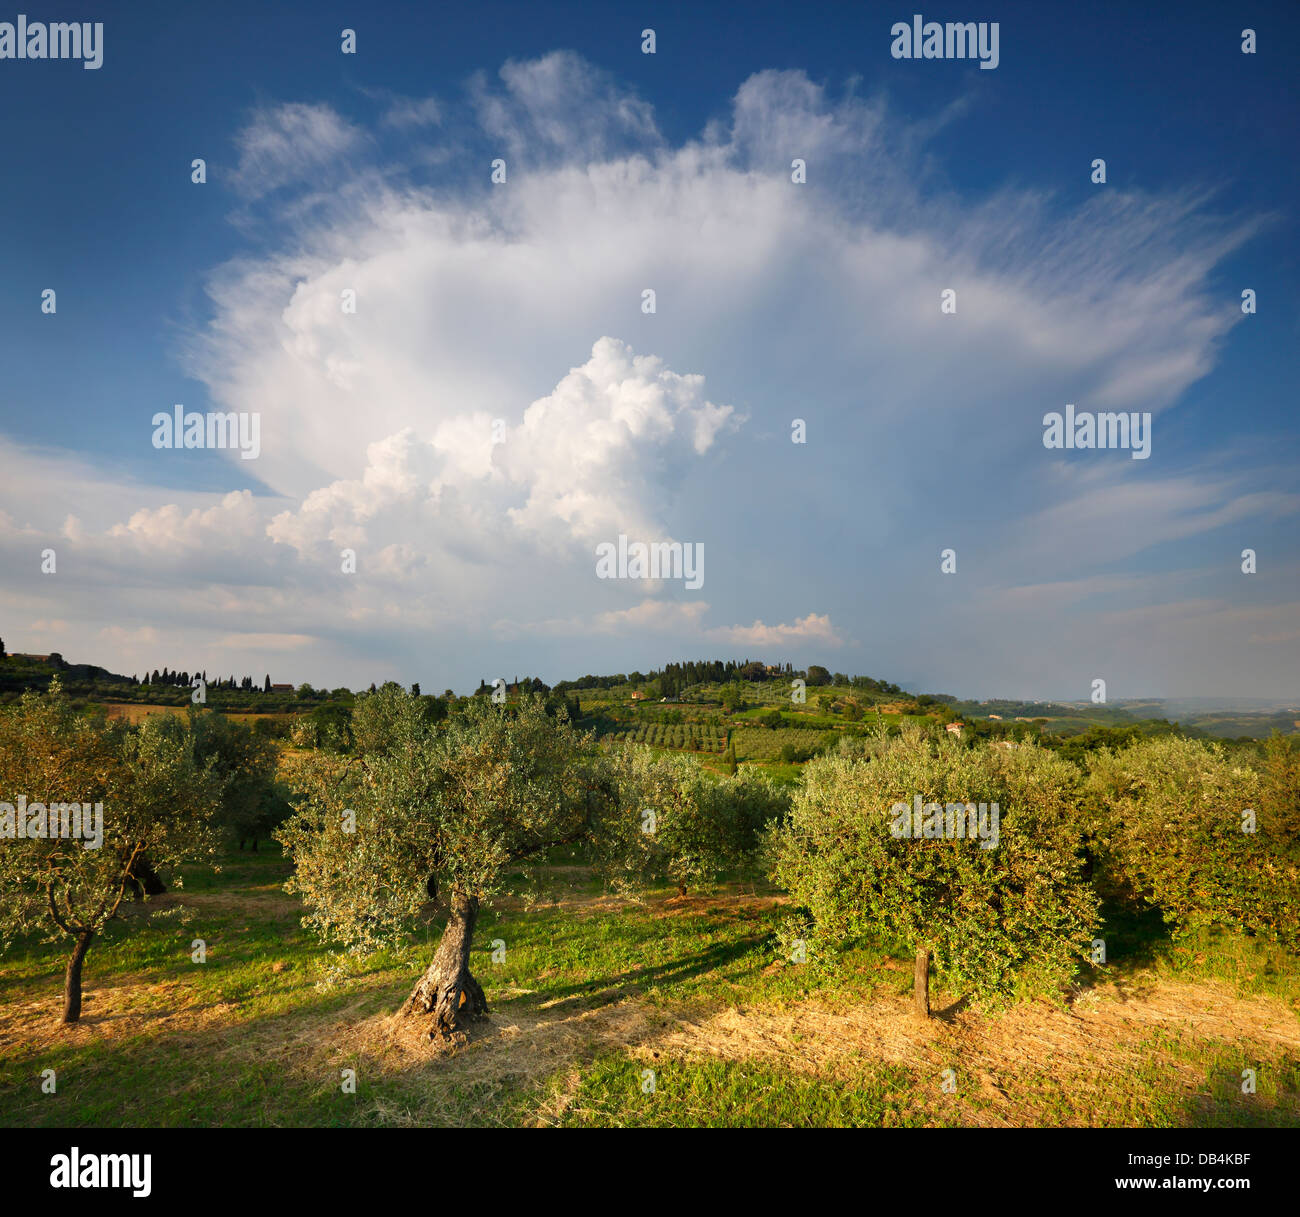 Tuscany, (near San Gimignano), Italy. Olive trees and stormy cloud. Stock Photo